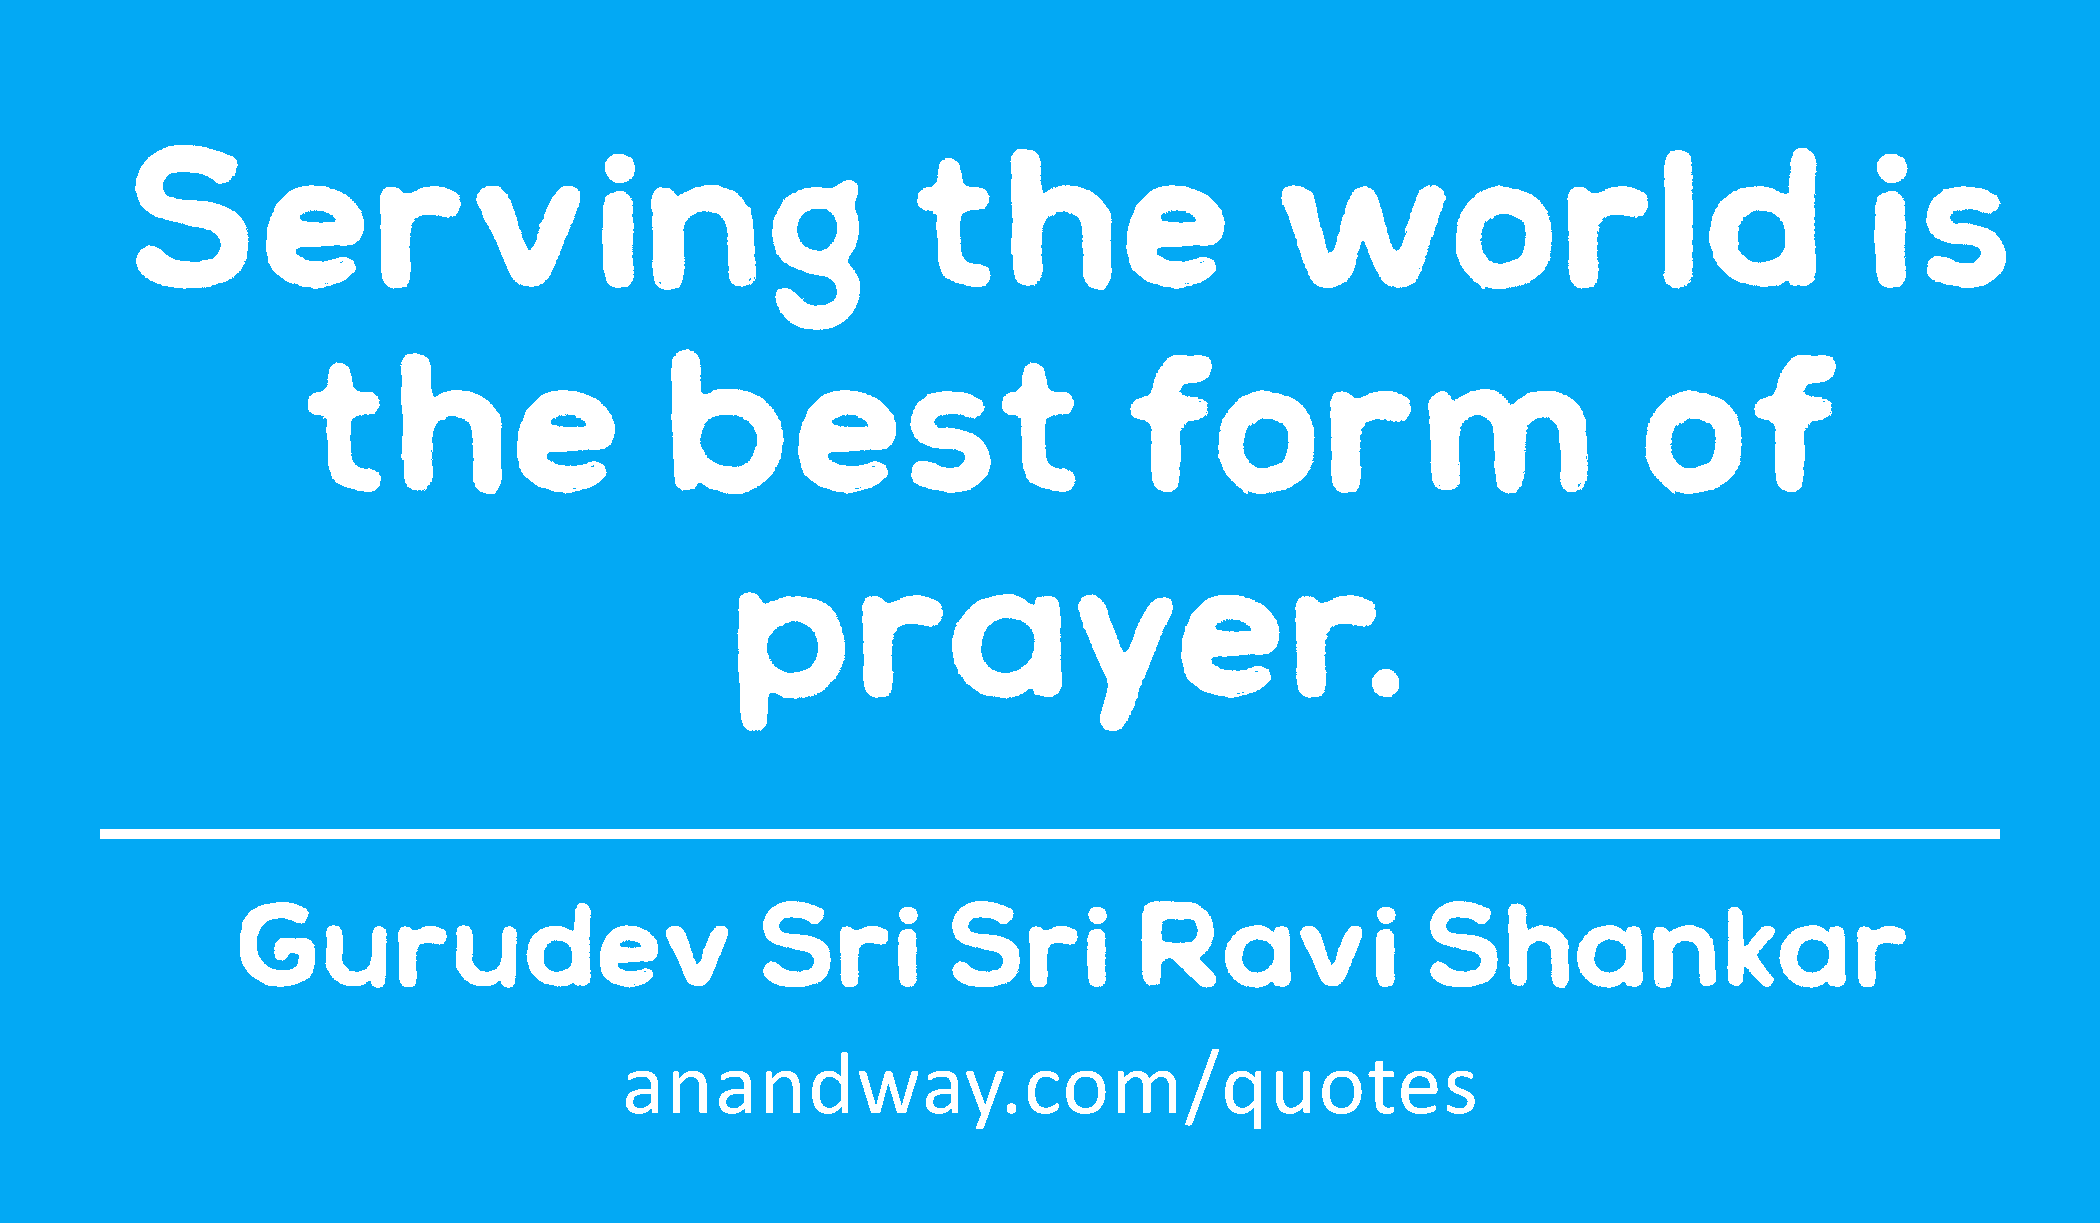 Serving the world is the best form of prayer. 
 -Gurudev Sri Sri Ravi Shankar